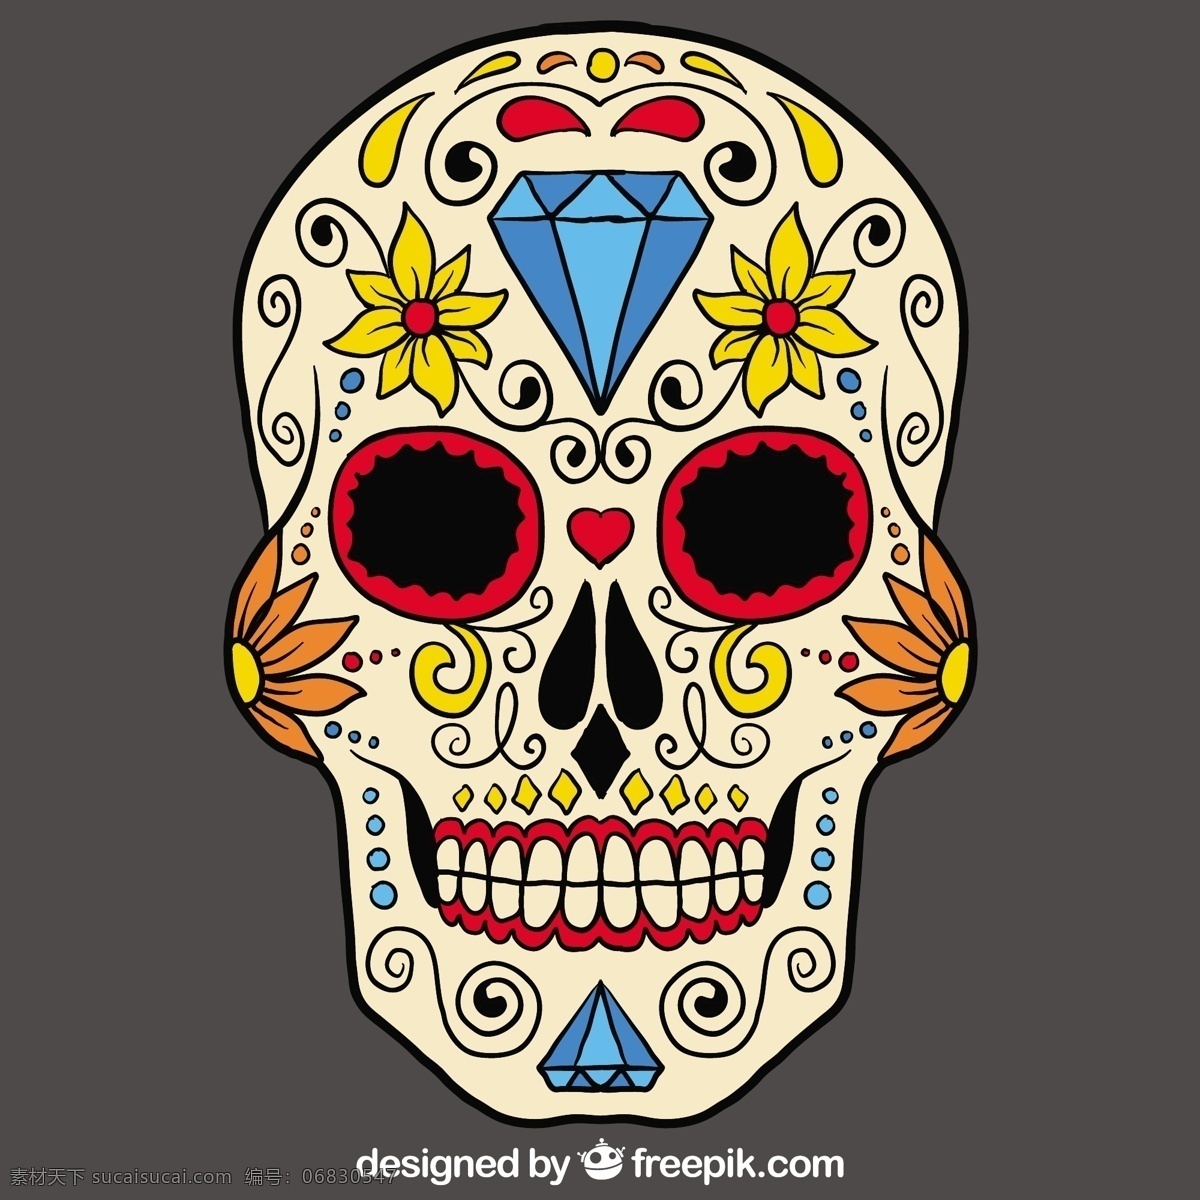 手拉糖头骨 一方面 万圣节 头骨 手绘 墨西哥 绘画 文化 糖 天 抽死的 粗略的 传统的 糖头骨 亡灵节 灰色